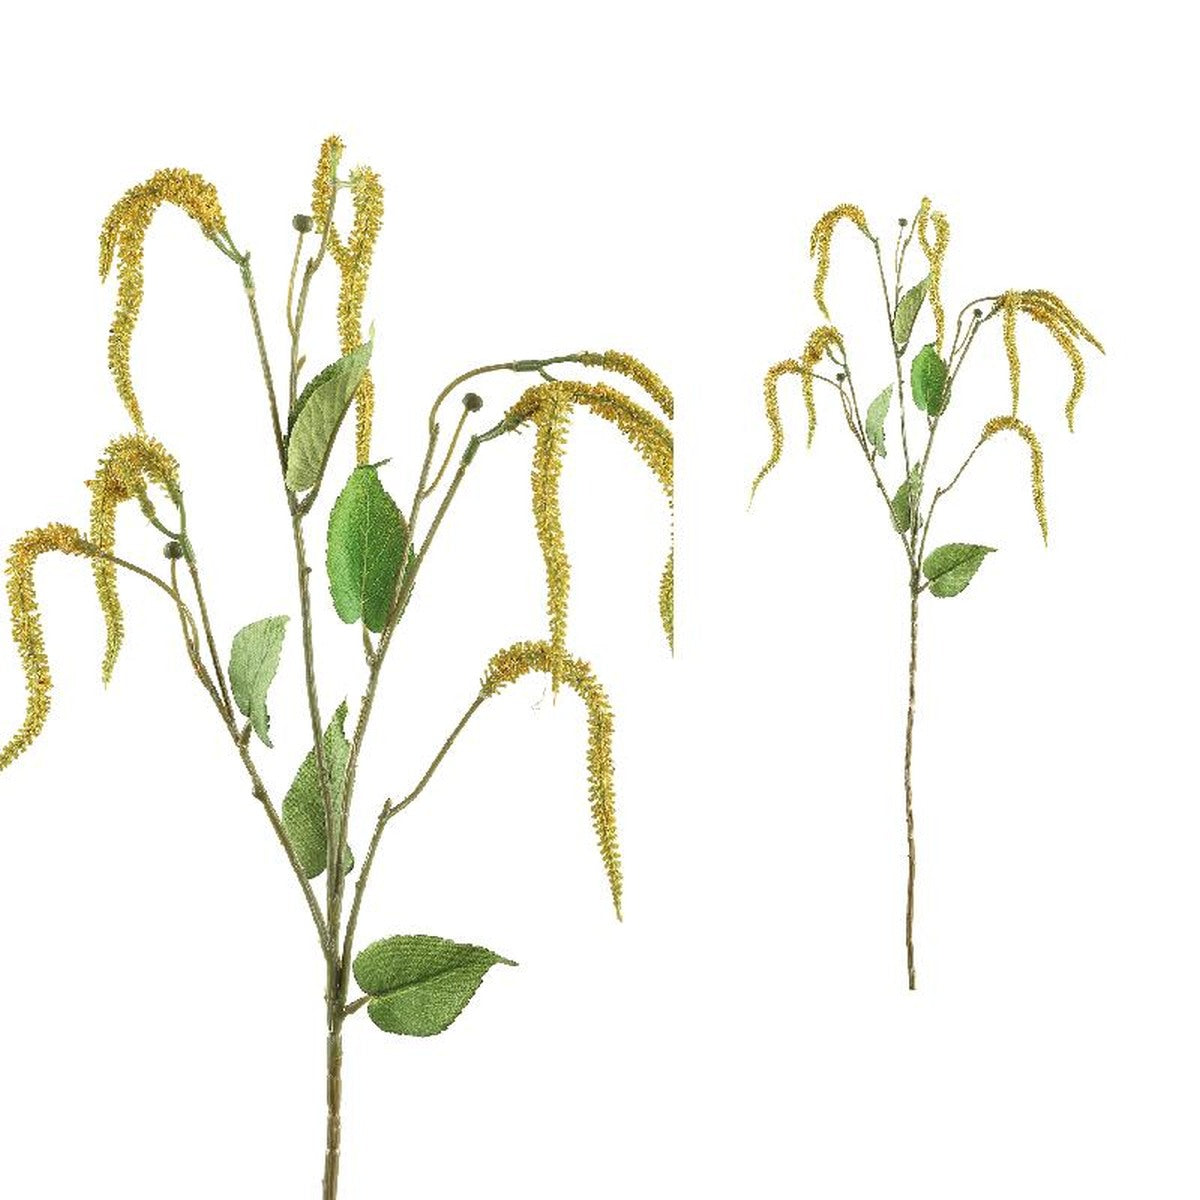 Ptmd garden fleur cypress seeds feuille artificielle - 42 x 16 x 83 cm - jaune